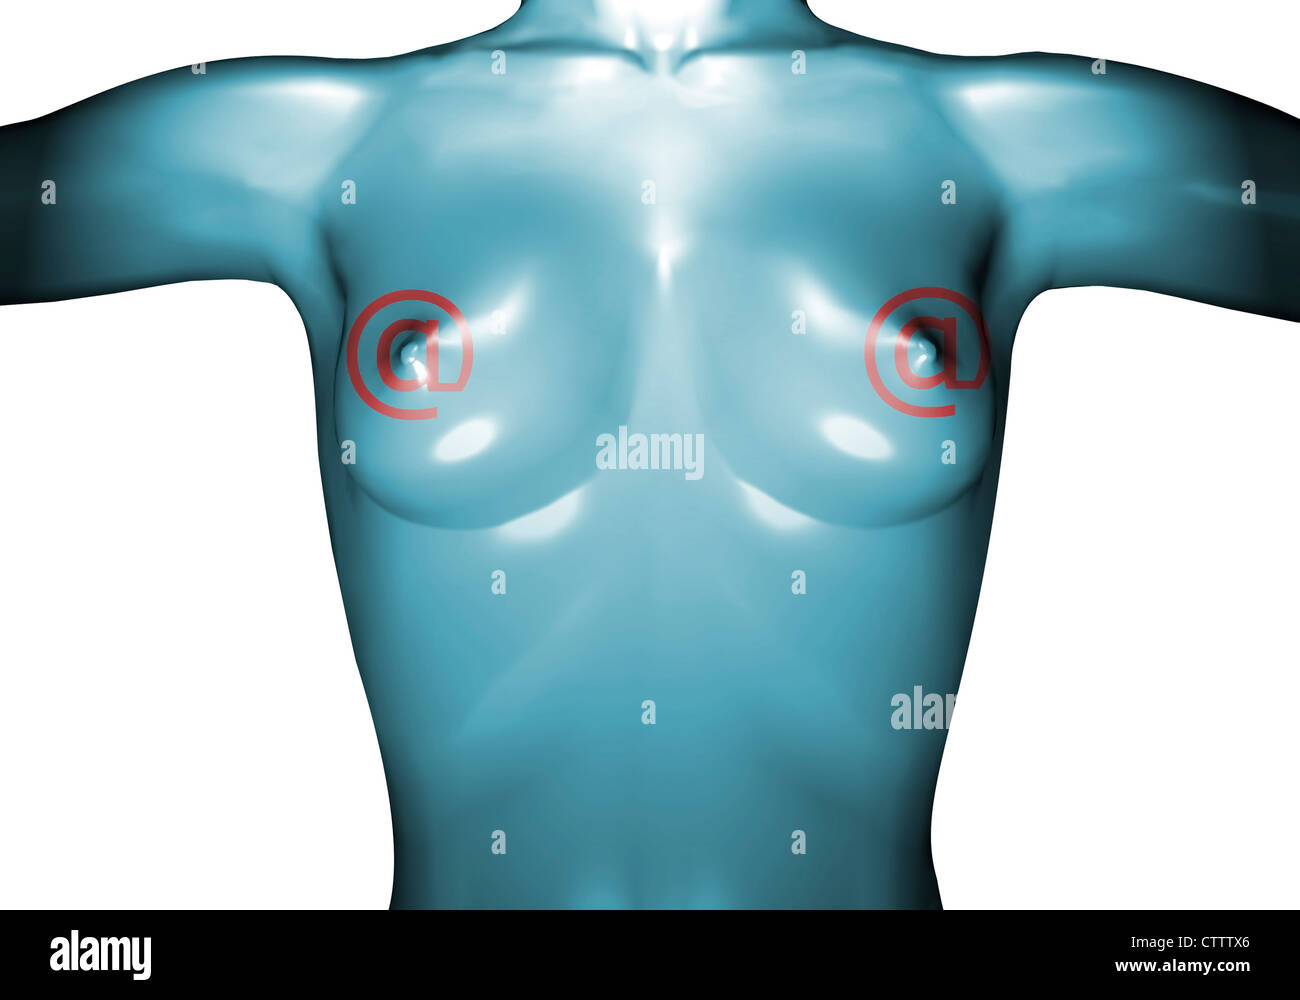 Nackter Frauenoberkörper Brust aus Gummi oder Plastik mit a Zeichen Foto Stock